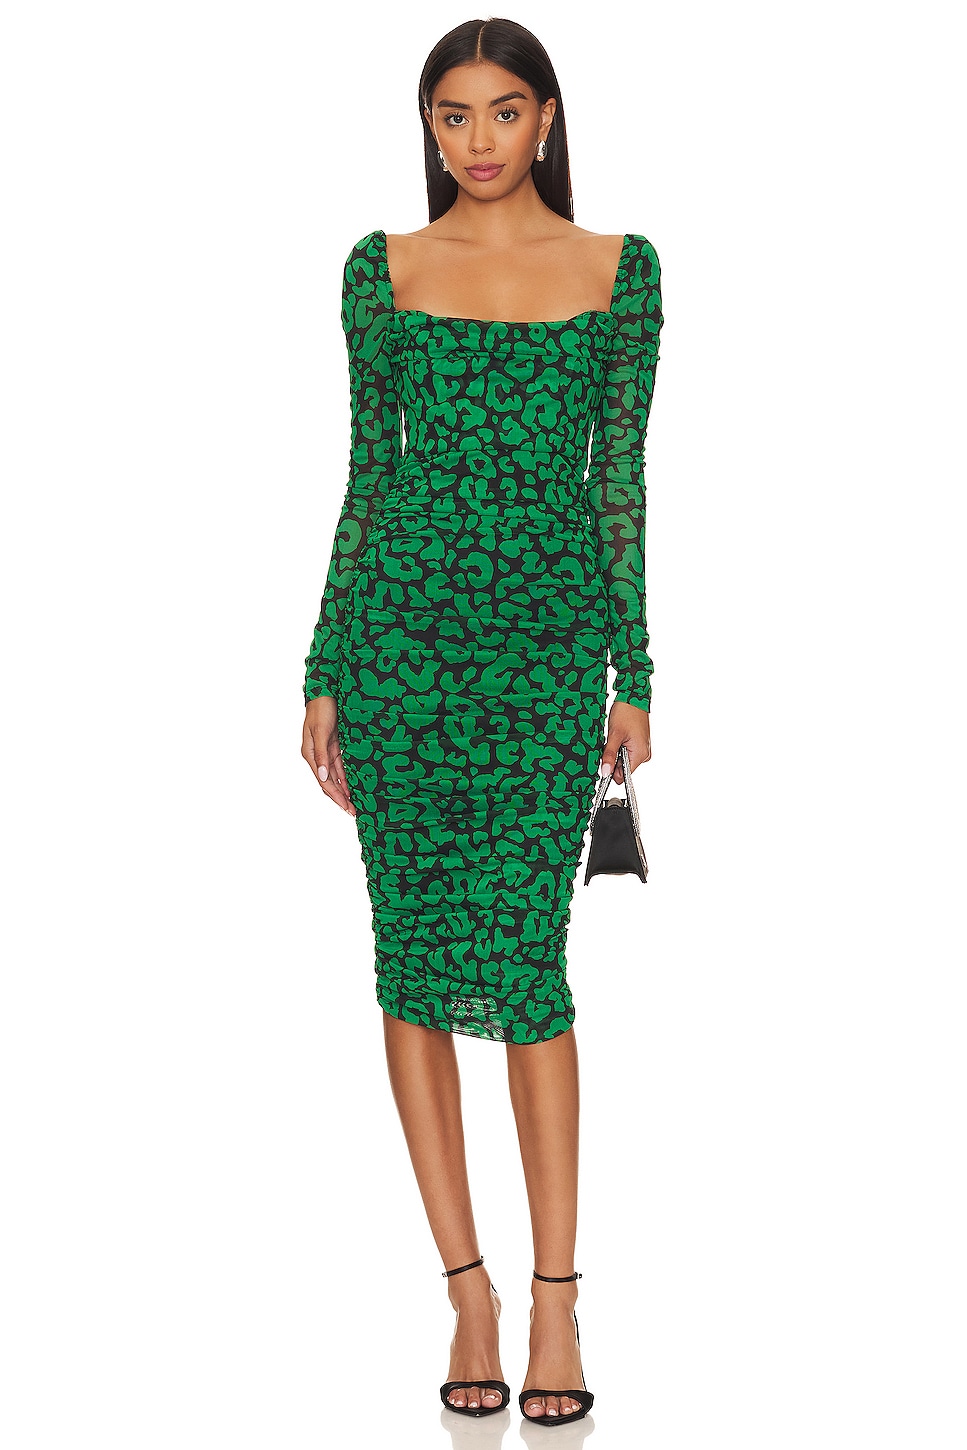 Leopard Print Green Mini Dress + Gold Belt